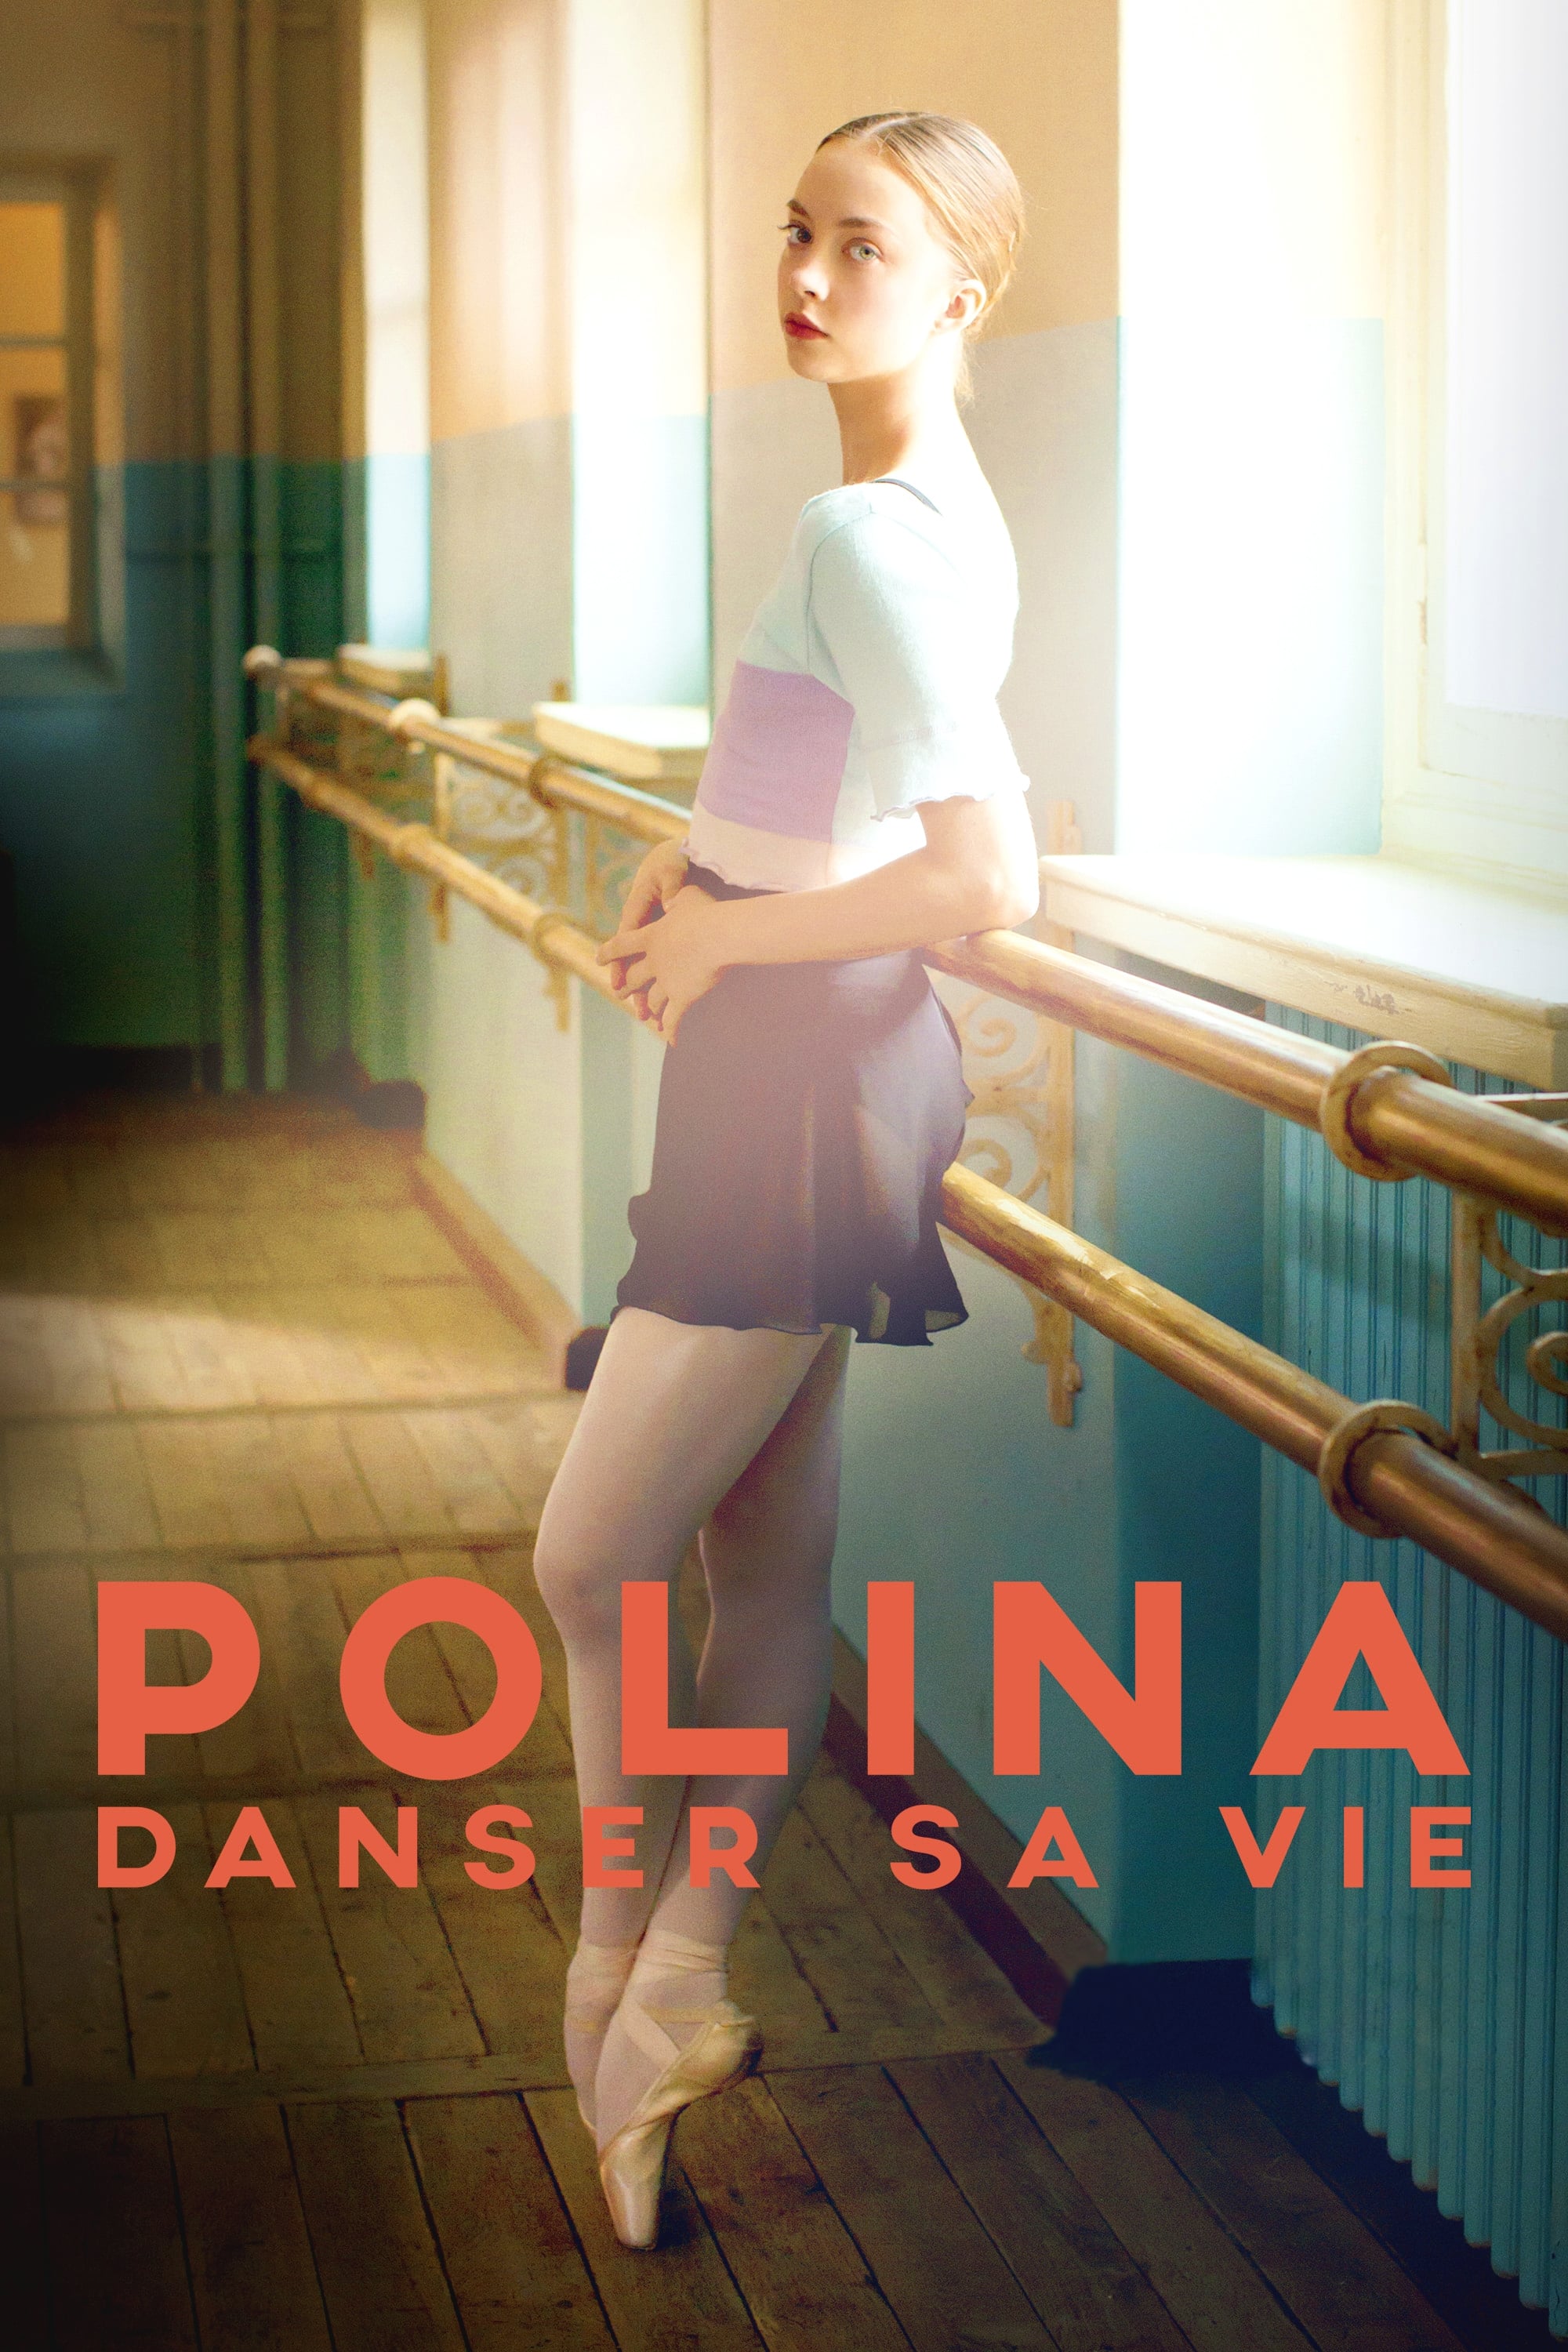 Polina, danser sa vie  2016